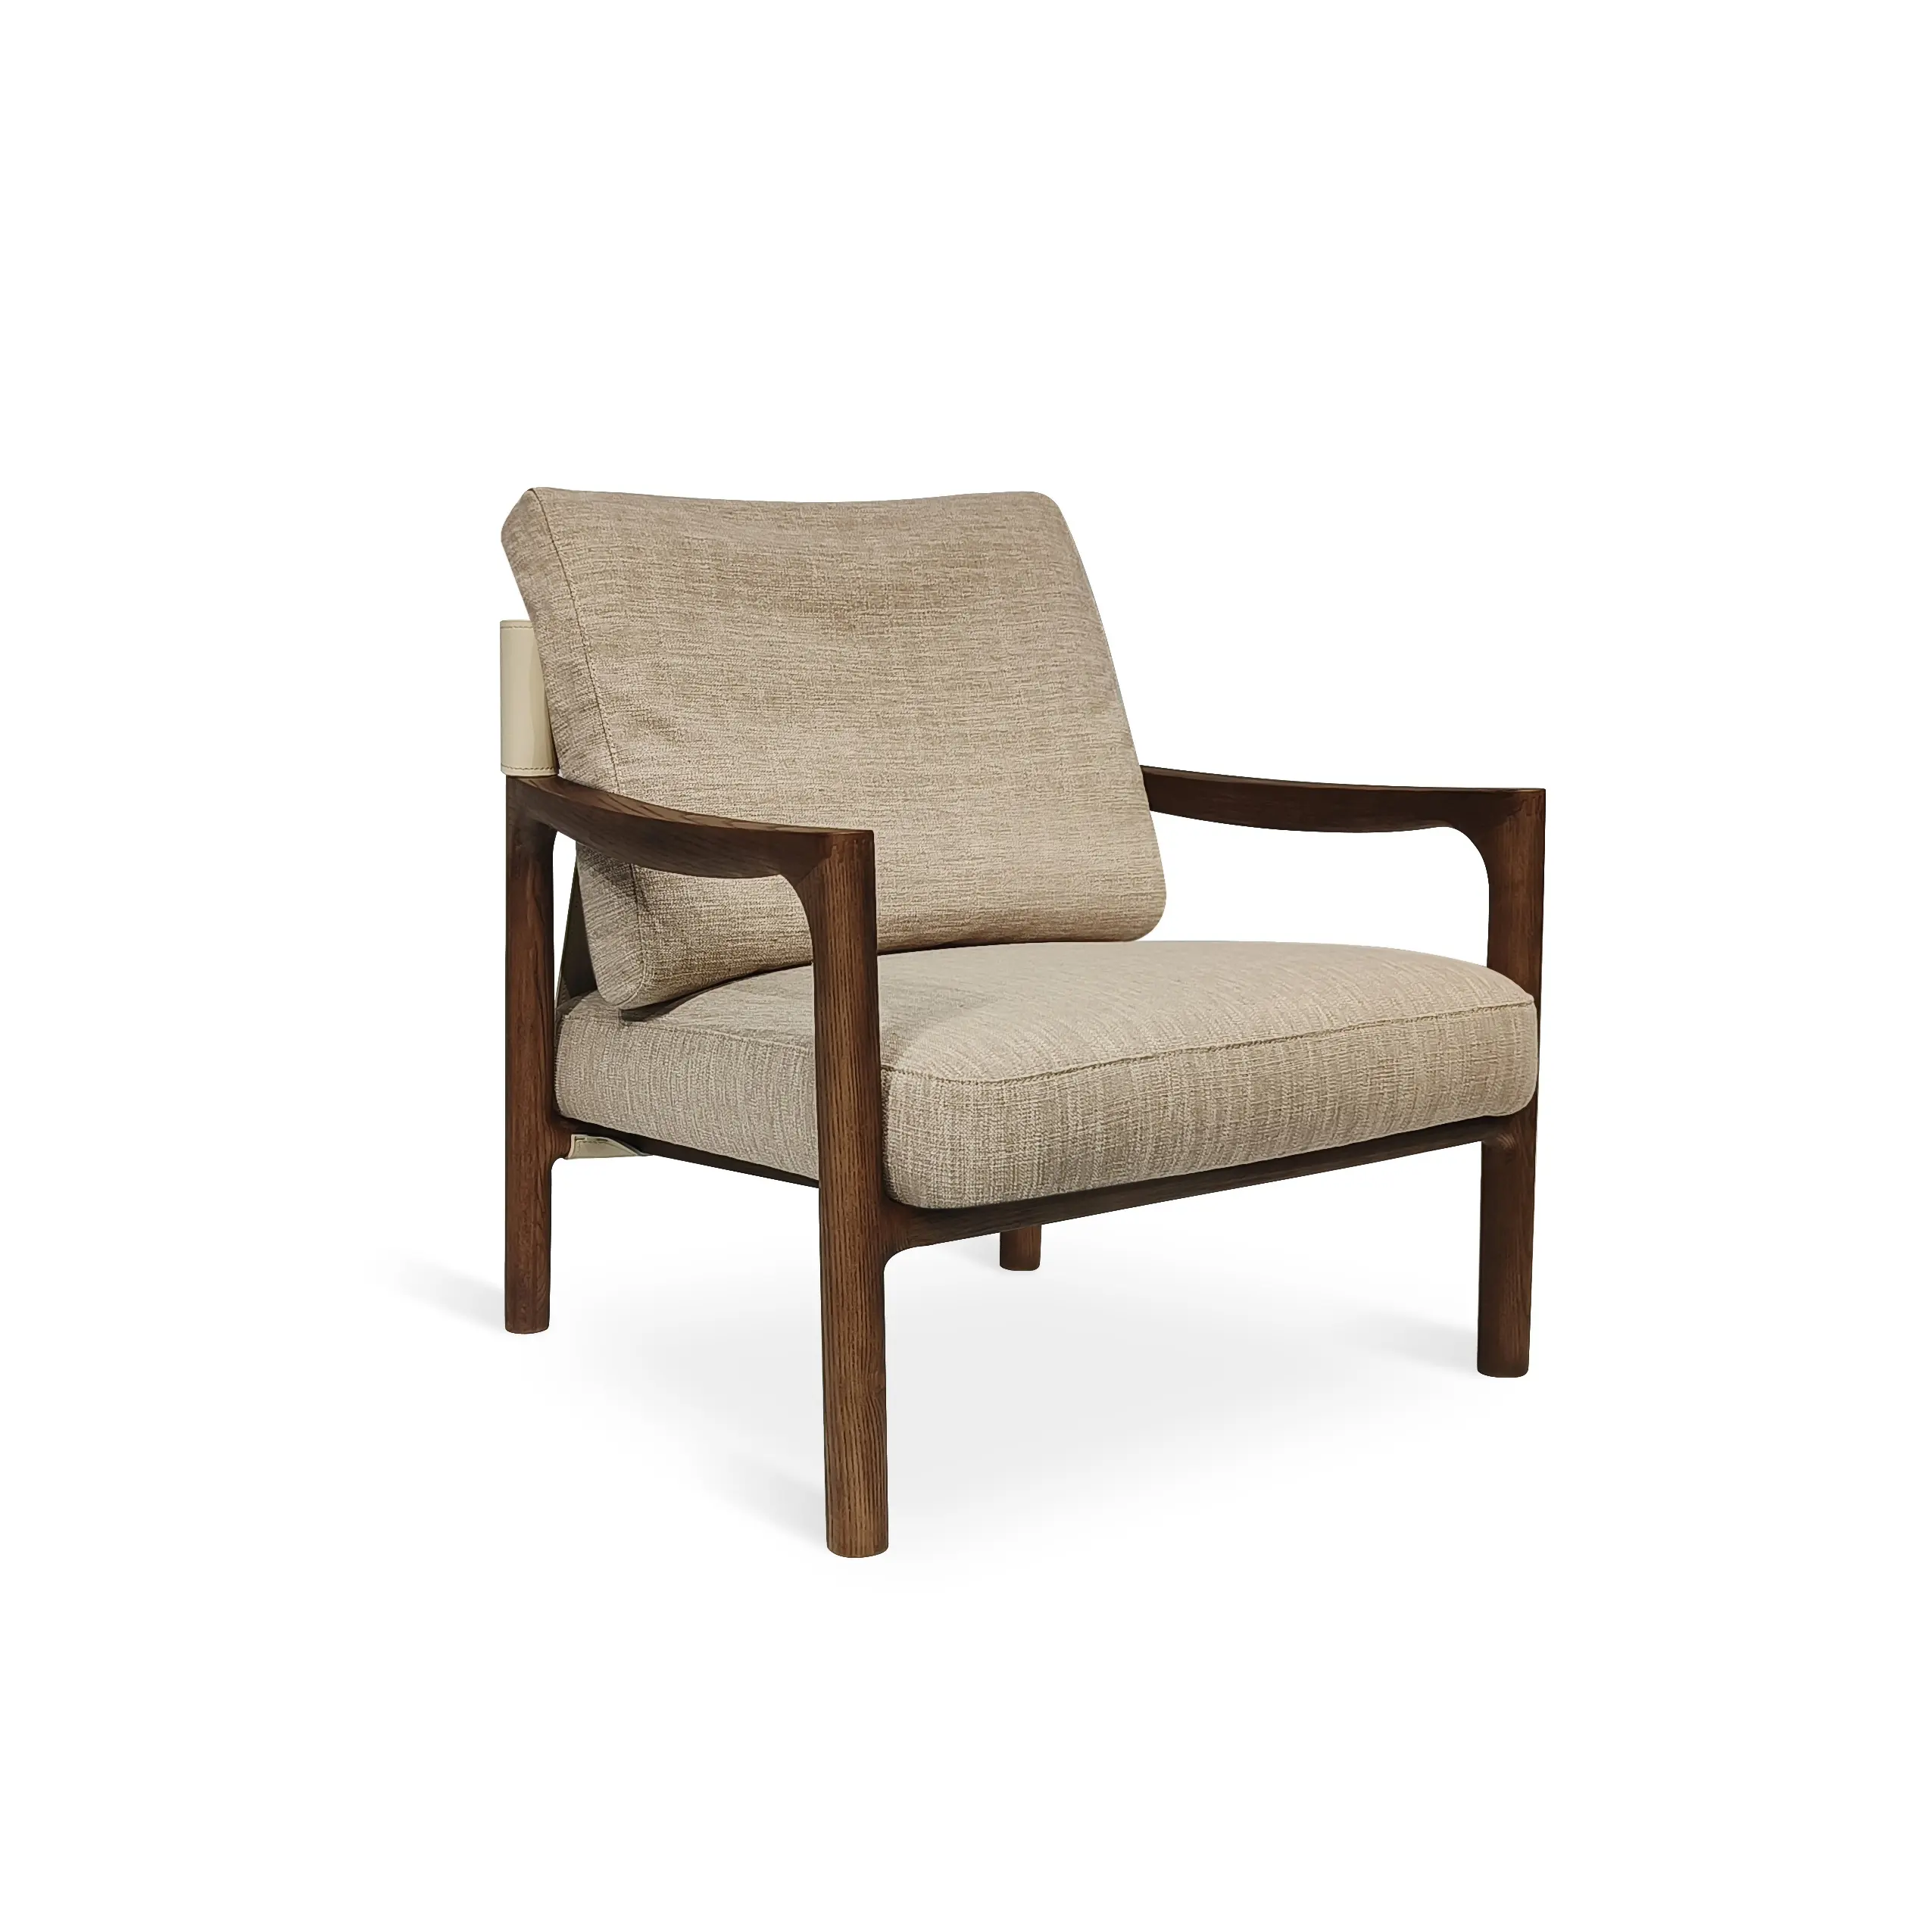 Современное кресло для мебели, кресло из микрофибры и кожи, деревянное кресло для отдыха в гостиной, диван-стулья